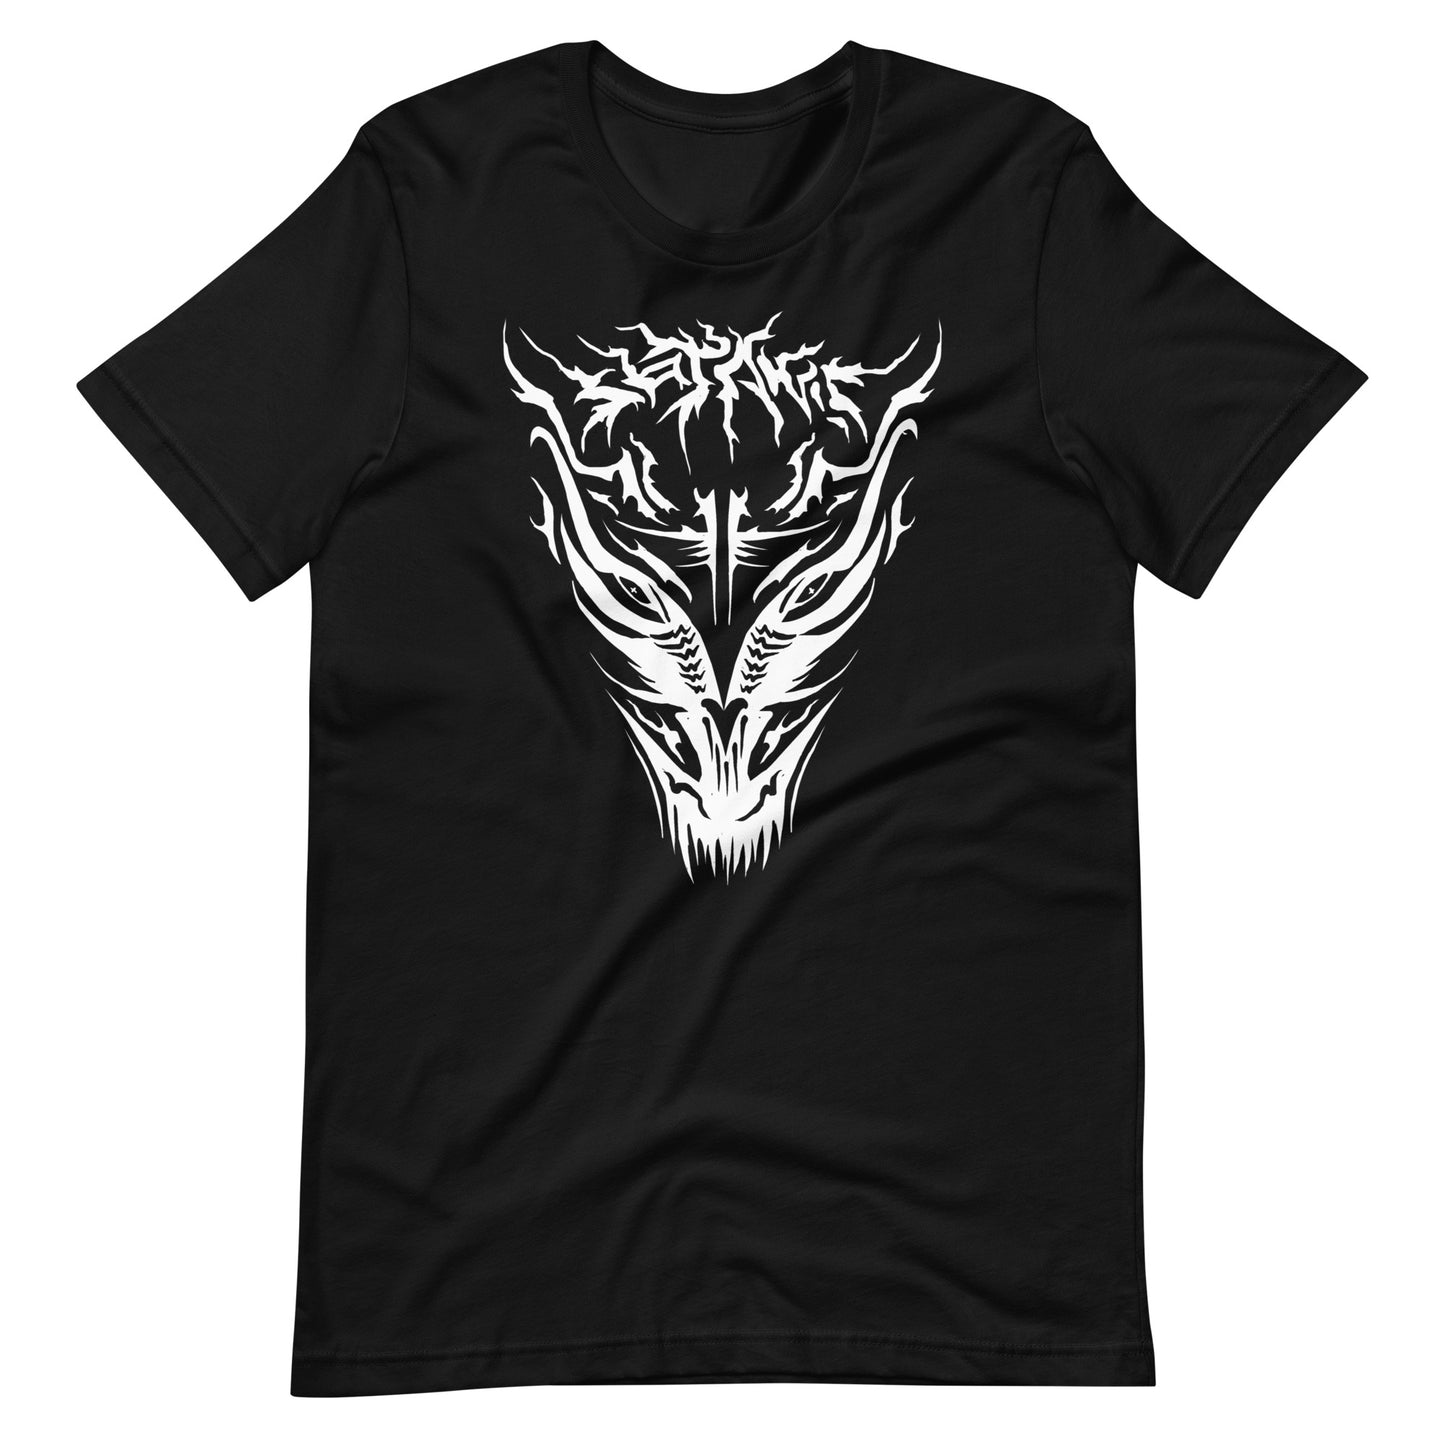 Demon - Men's t-shirt - Black Front